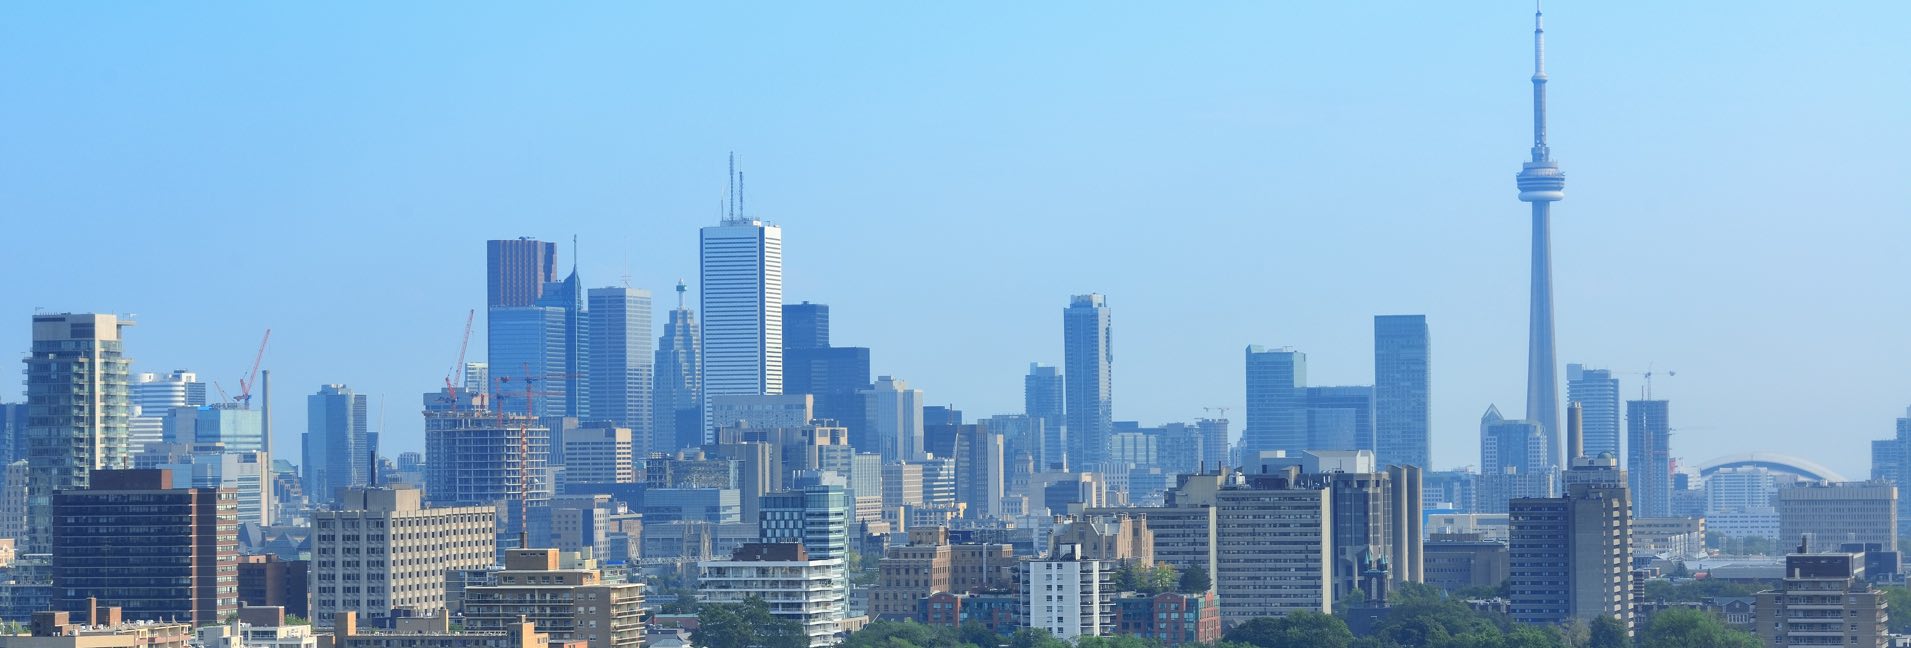 Photo de la ville de toront sous un ciel dégagé avec la CN tower sur la droite